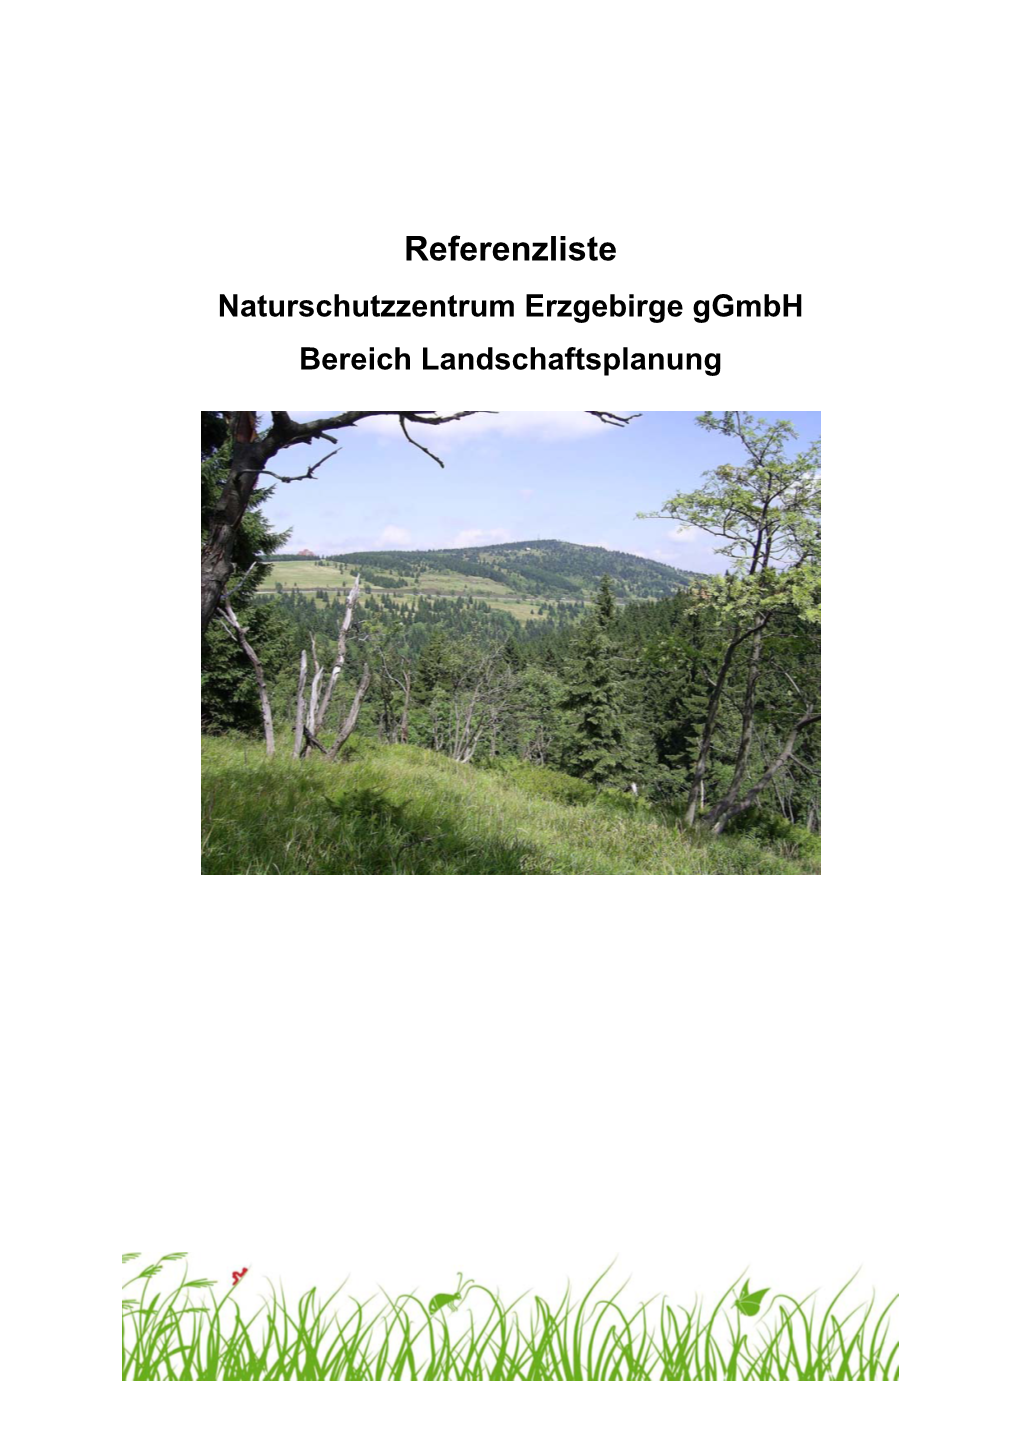 Referenzliste Naturschutzzentrum Erzgebirge Ggmbh Bereich Landschaftsplanung